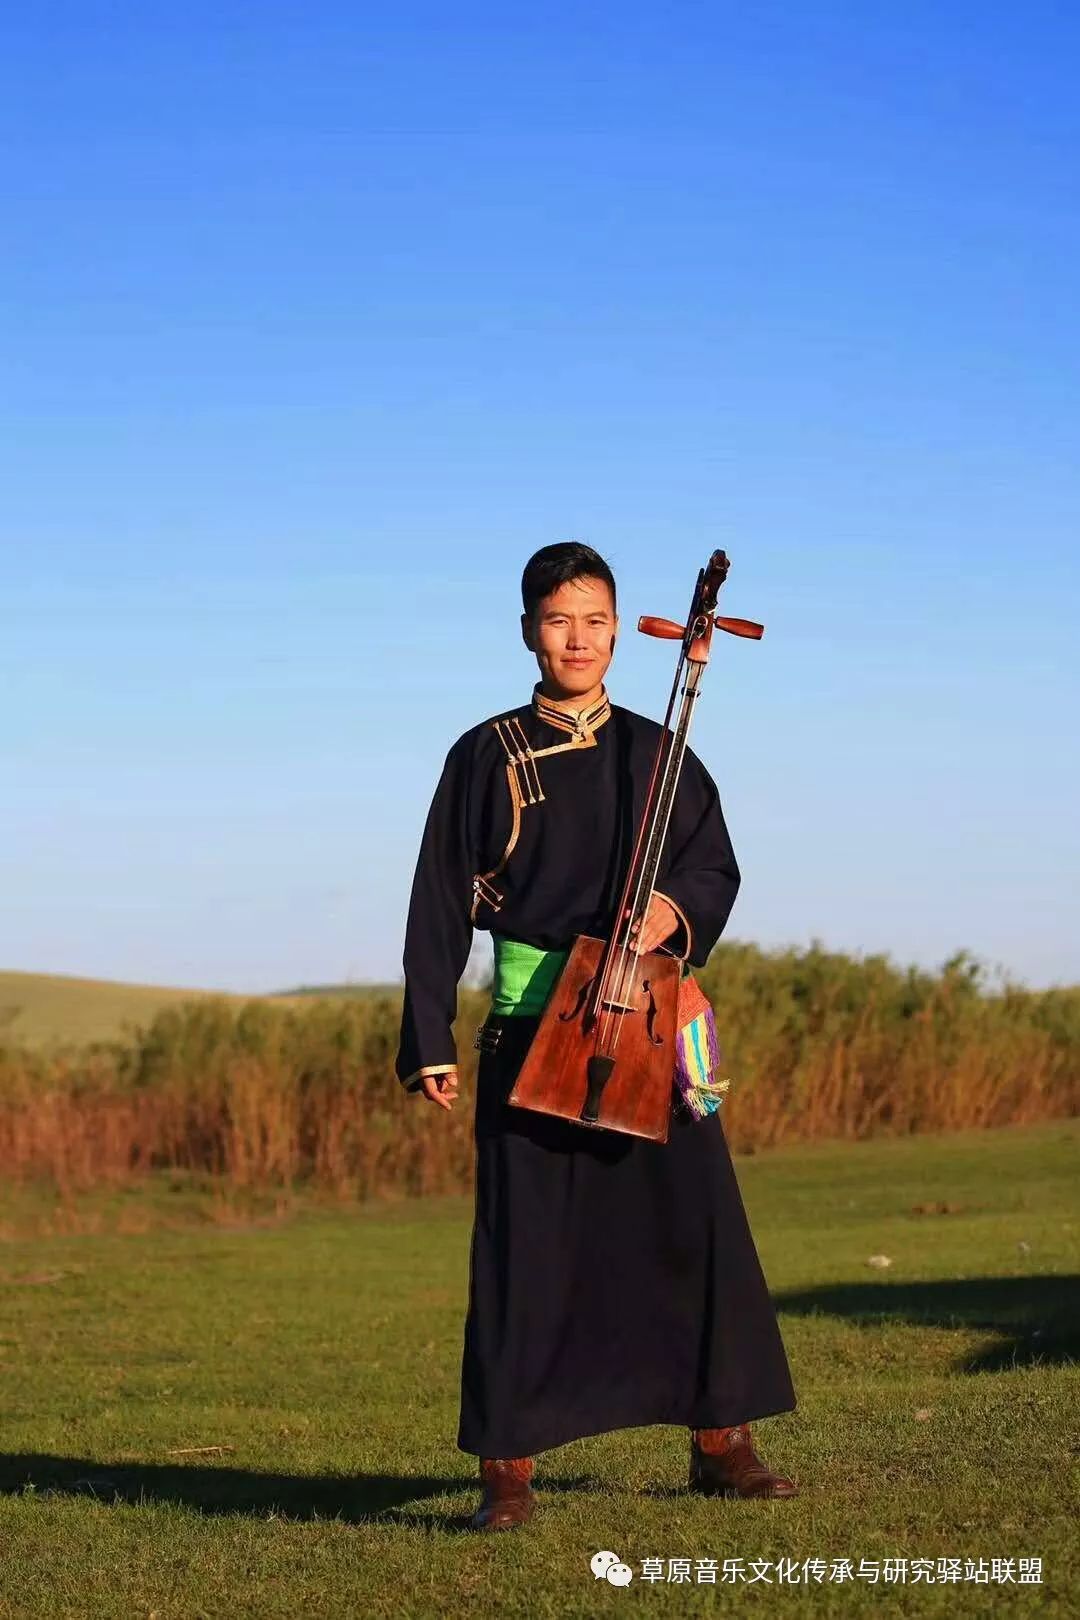 国家艺术基金2019年度艺术人才培养资助项目蒙古族马头琴音乐传承与